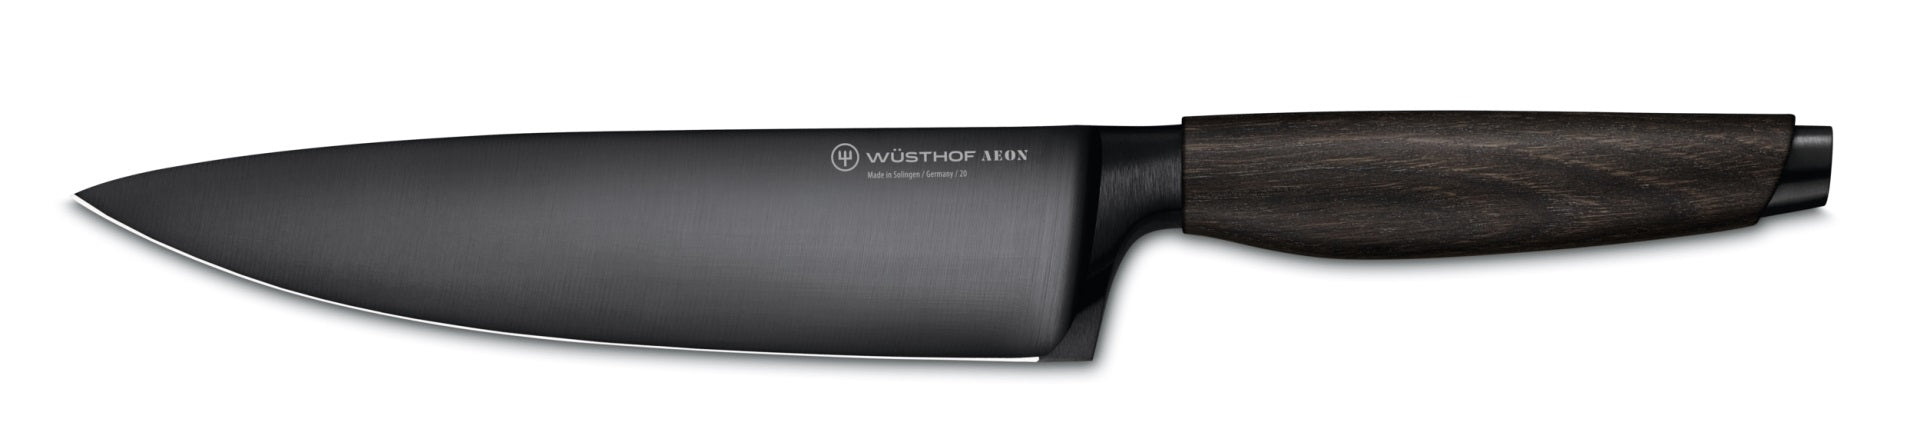 Wusthof Aeon coltello da cuoco 20 cm. edizione limitata